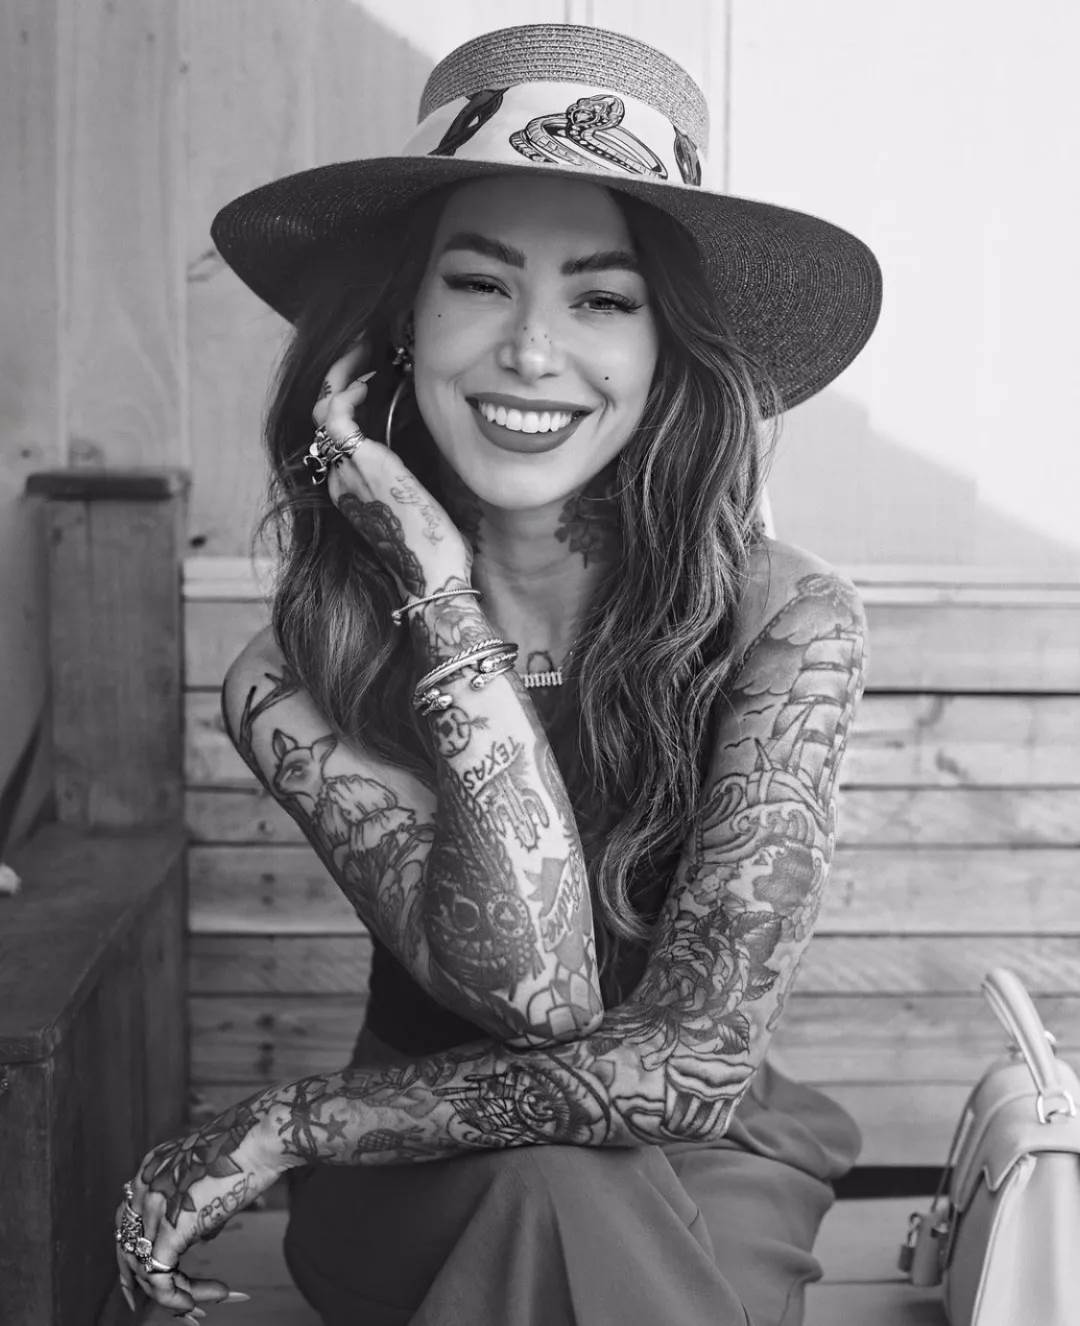 刺青美图㊳丨Sammijefcoate 迷人的笑容是让人无法抗拒的美